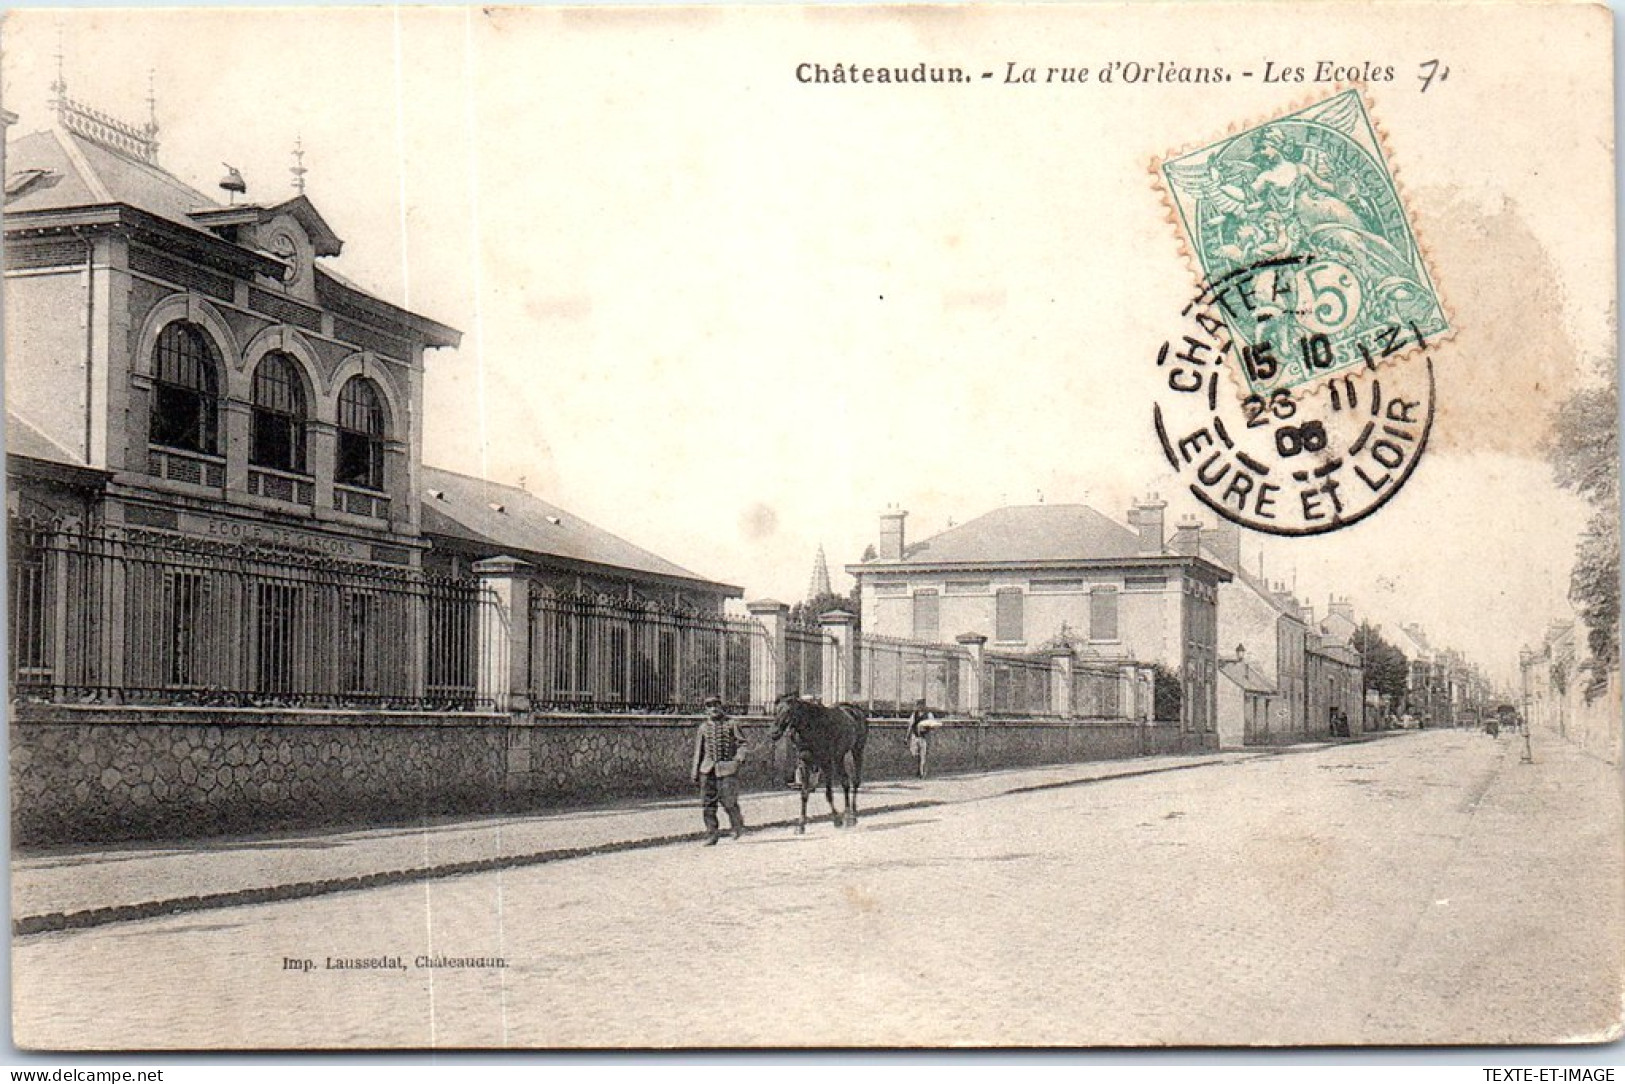 28 CHATEAUDUN -- La Rue D'orleans - Les Ecoles -  - Chateaudun